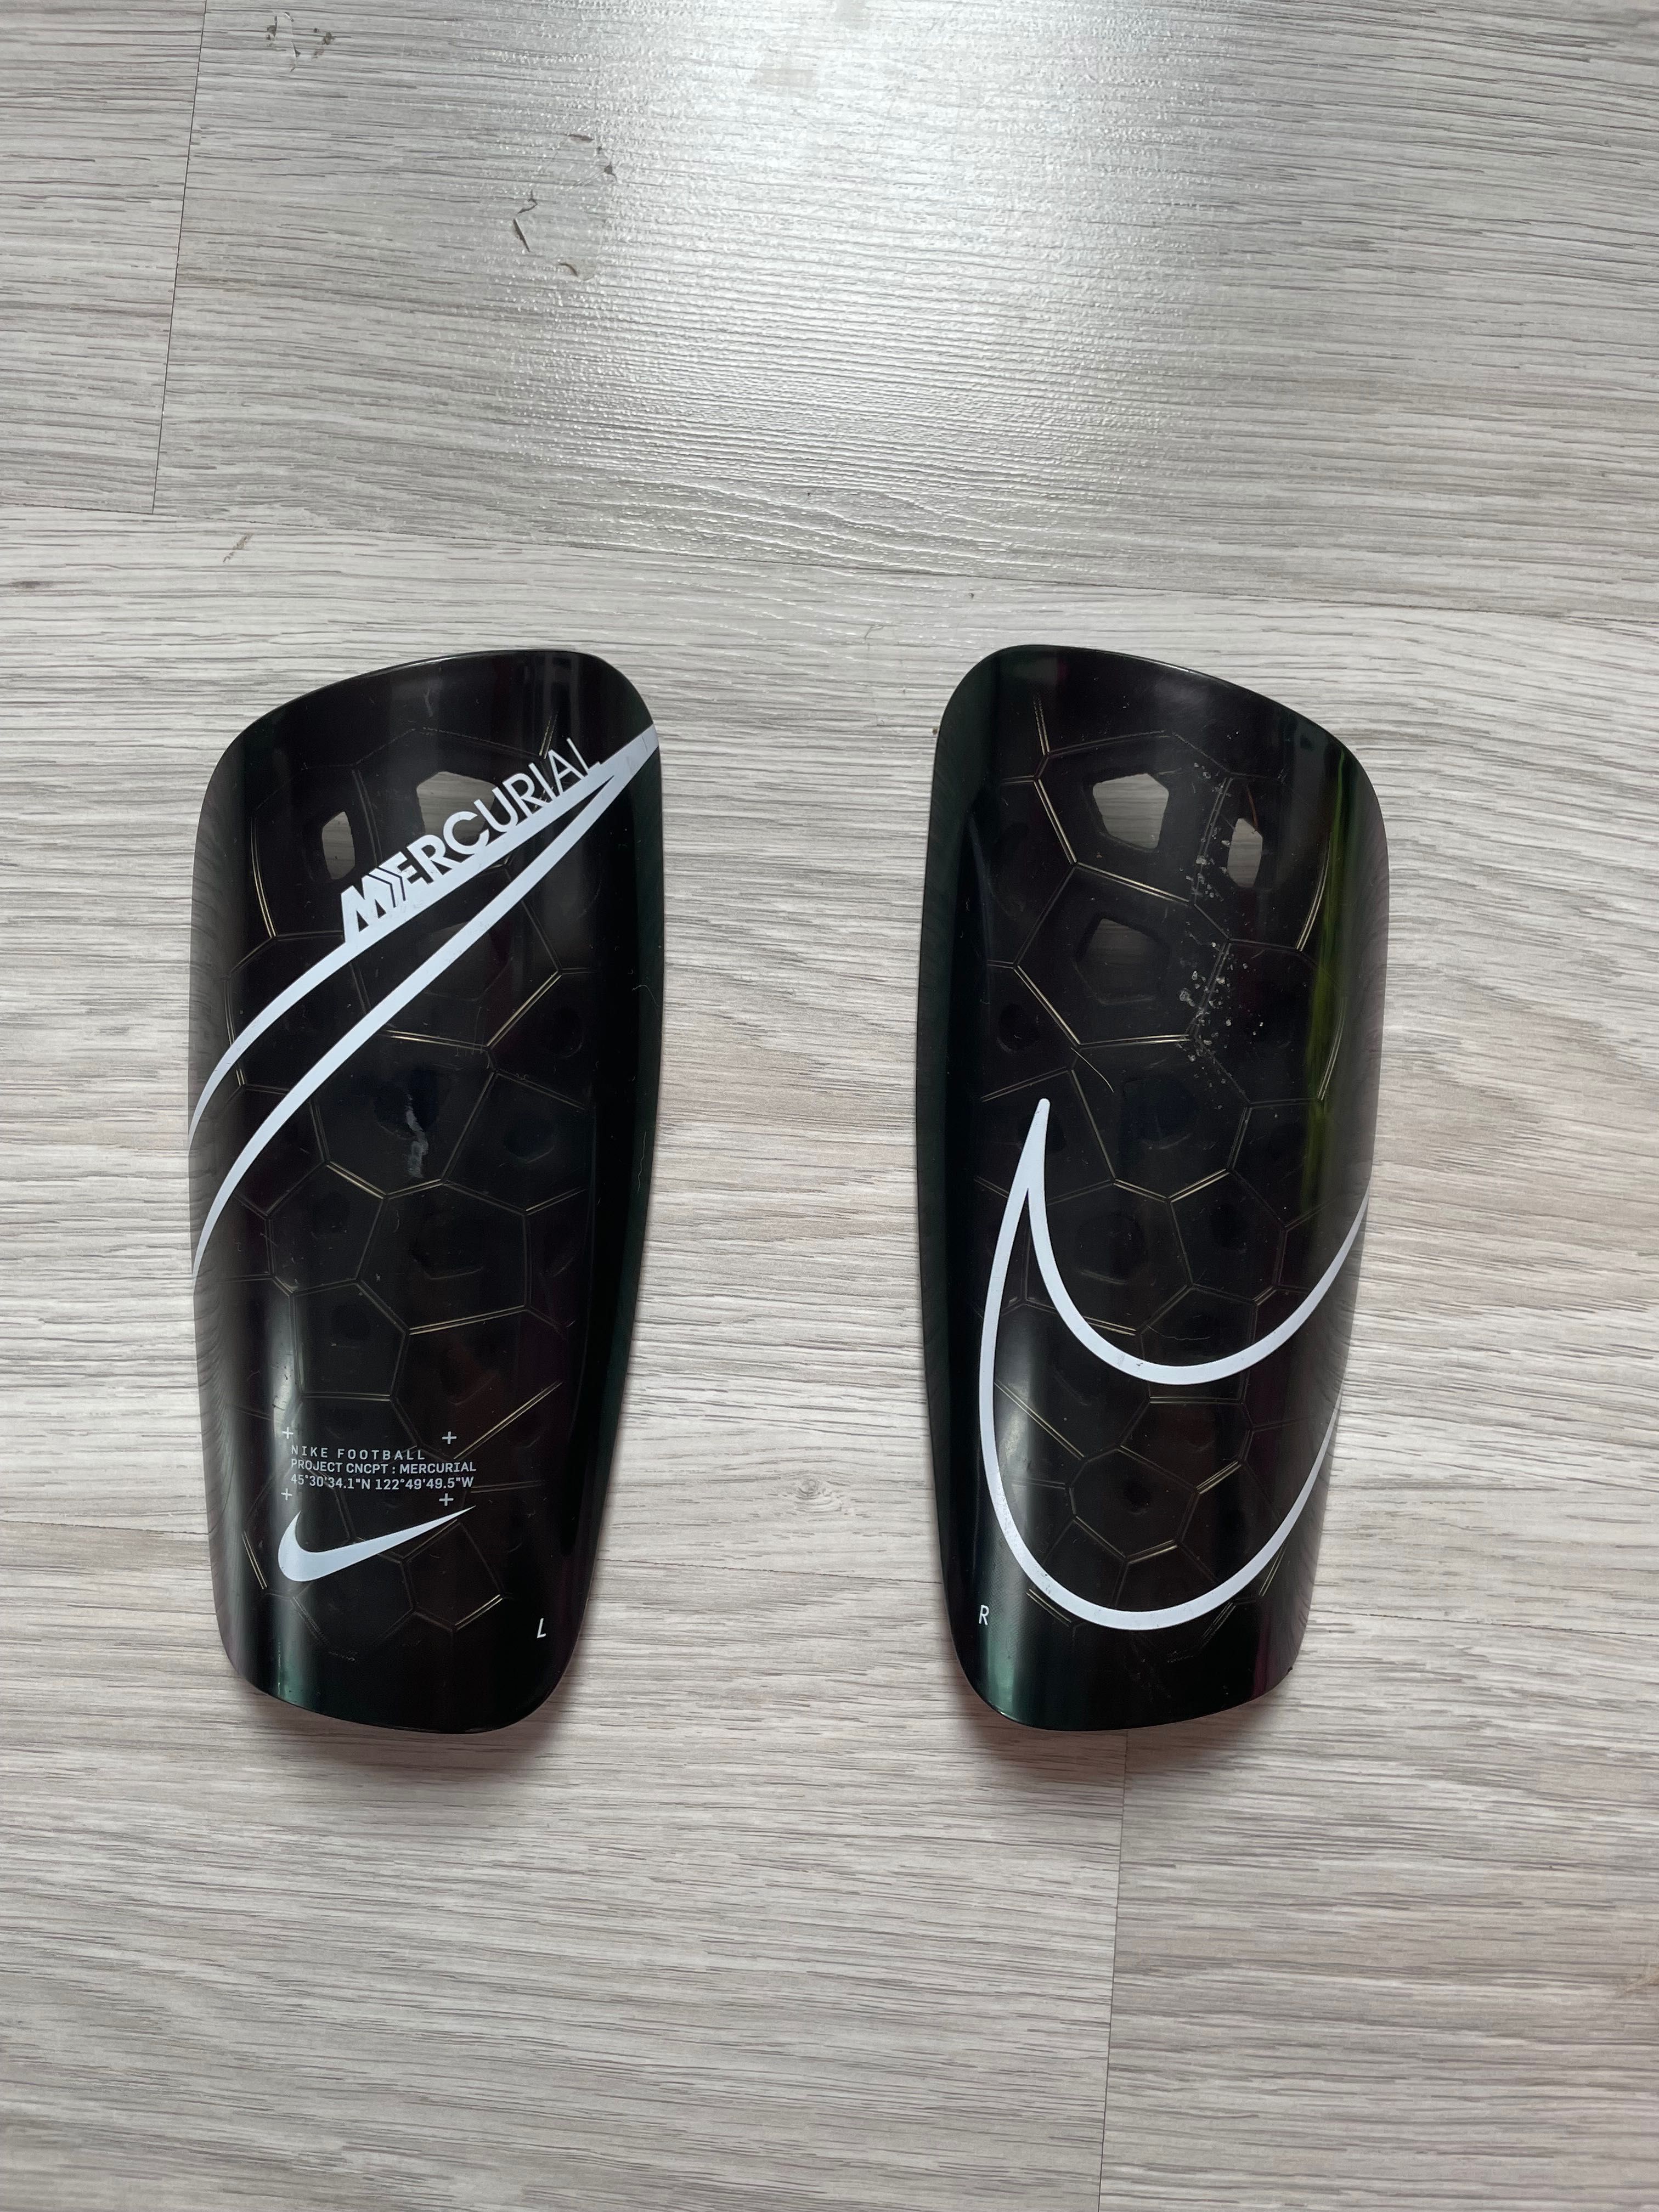 Ochraniacze piłkarskie nagolenniki Nike Mercurial Lite